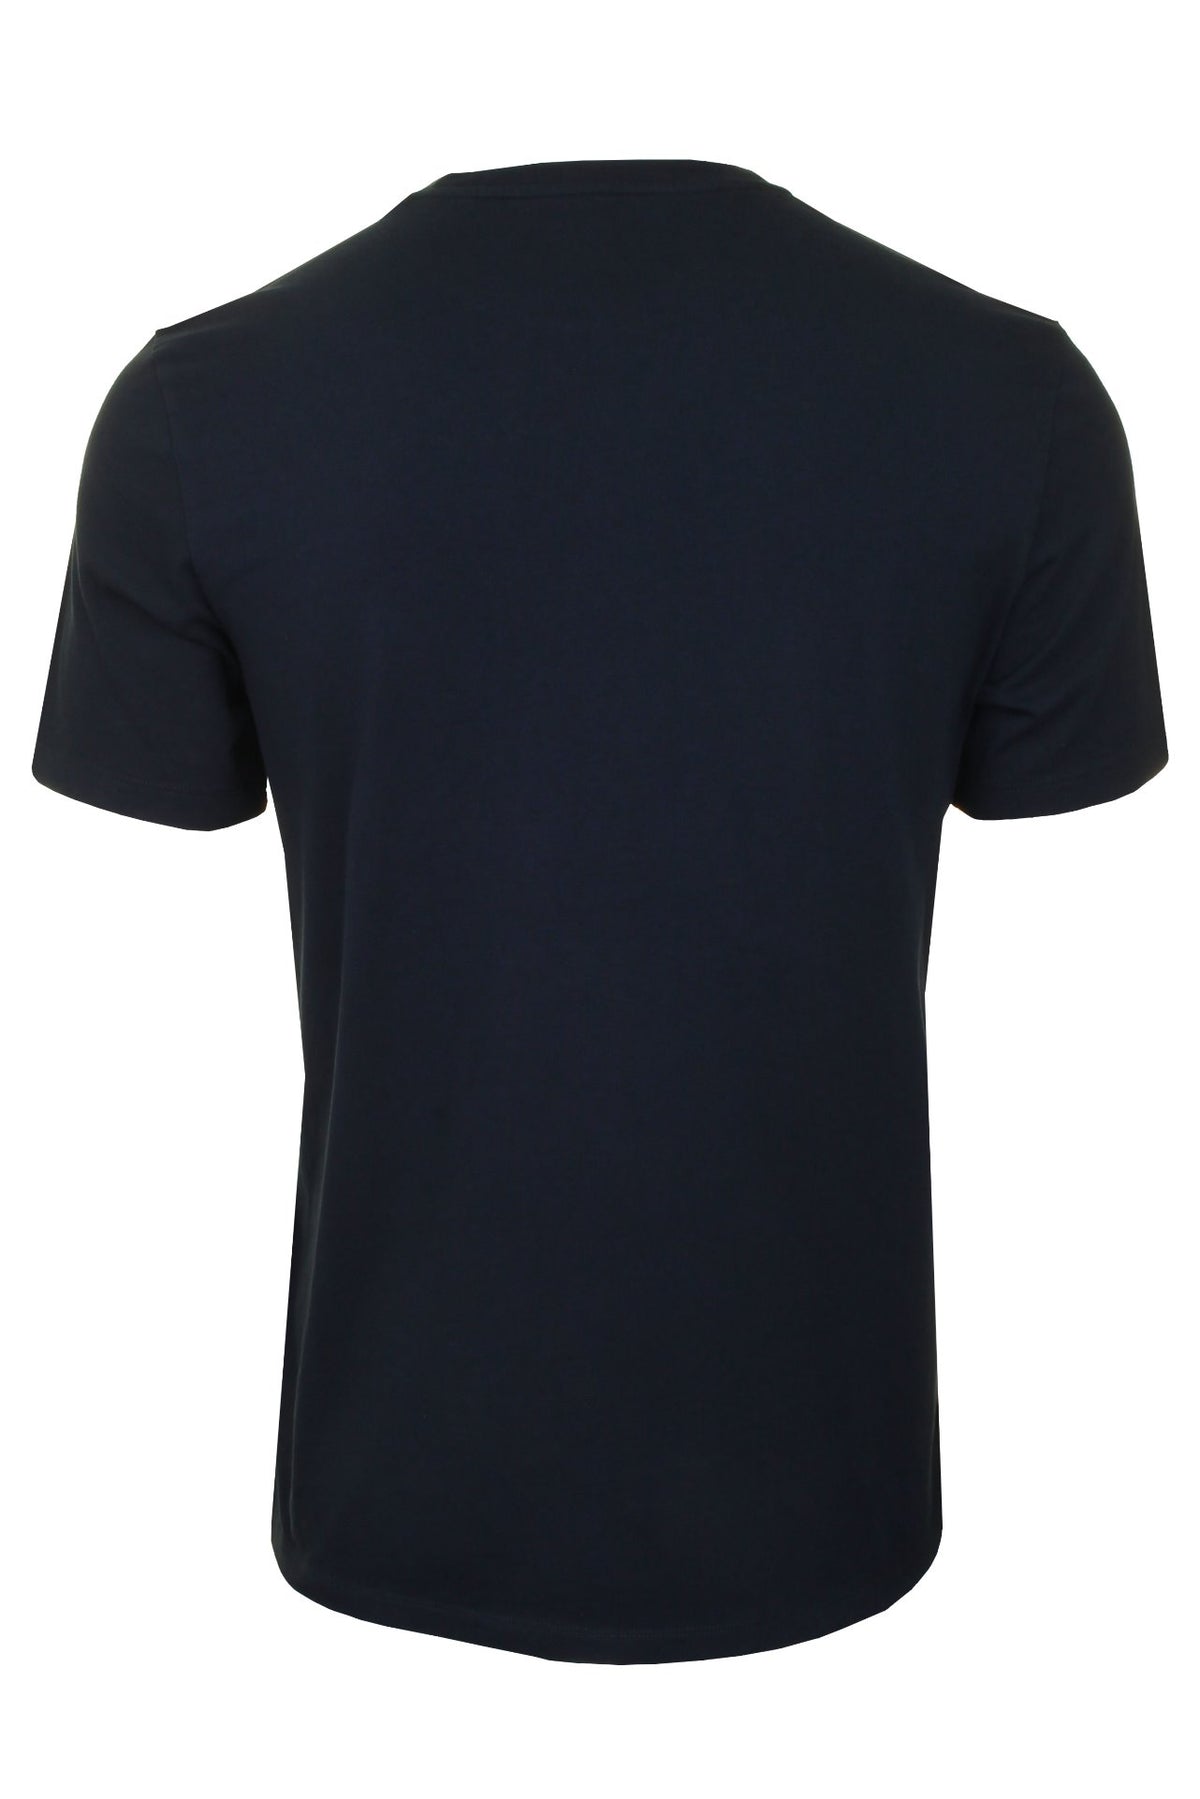 Timberland Mens Jersey T-Shirt 'Kennebec River Linea Tee', 02, Tb0A2C31, Dark Sapphire